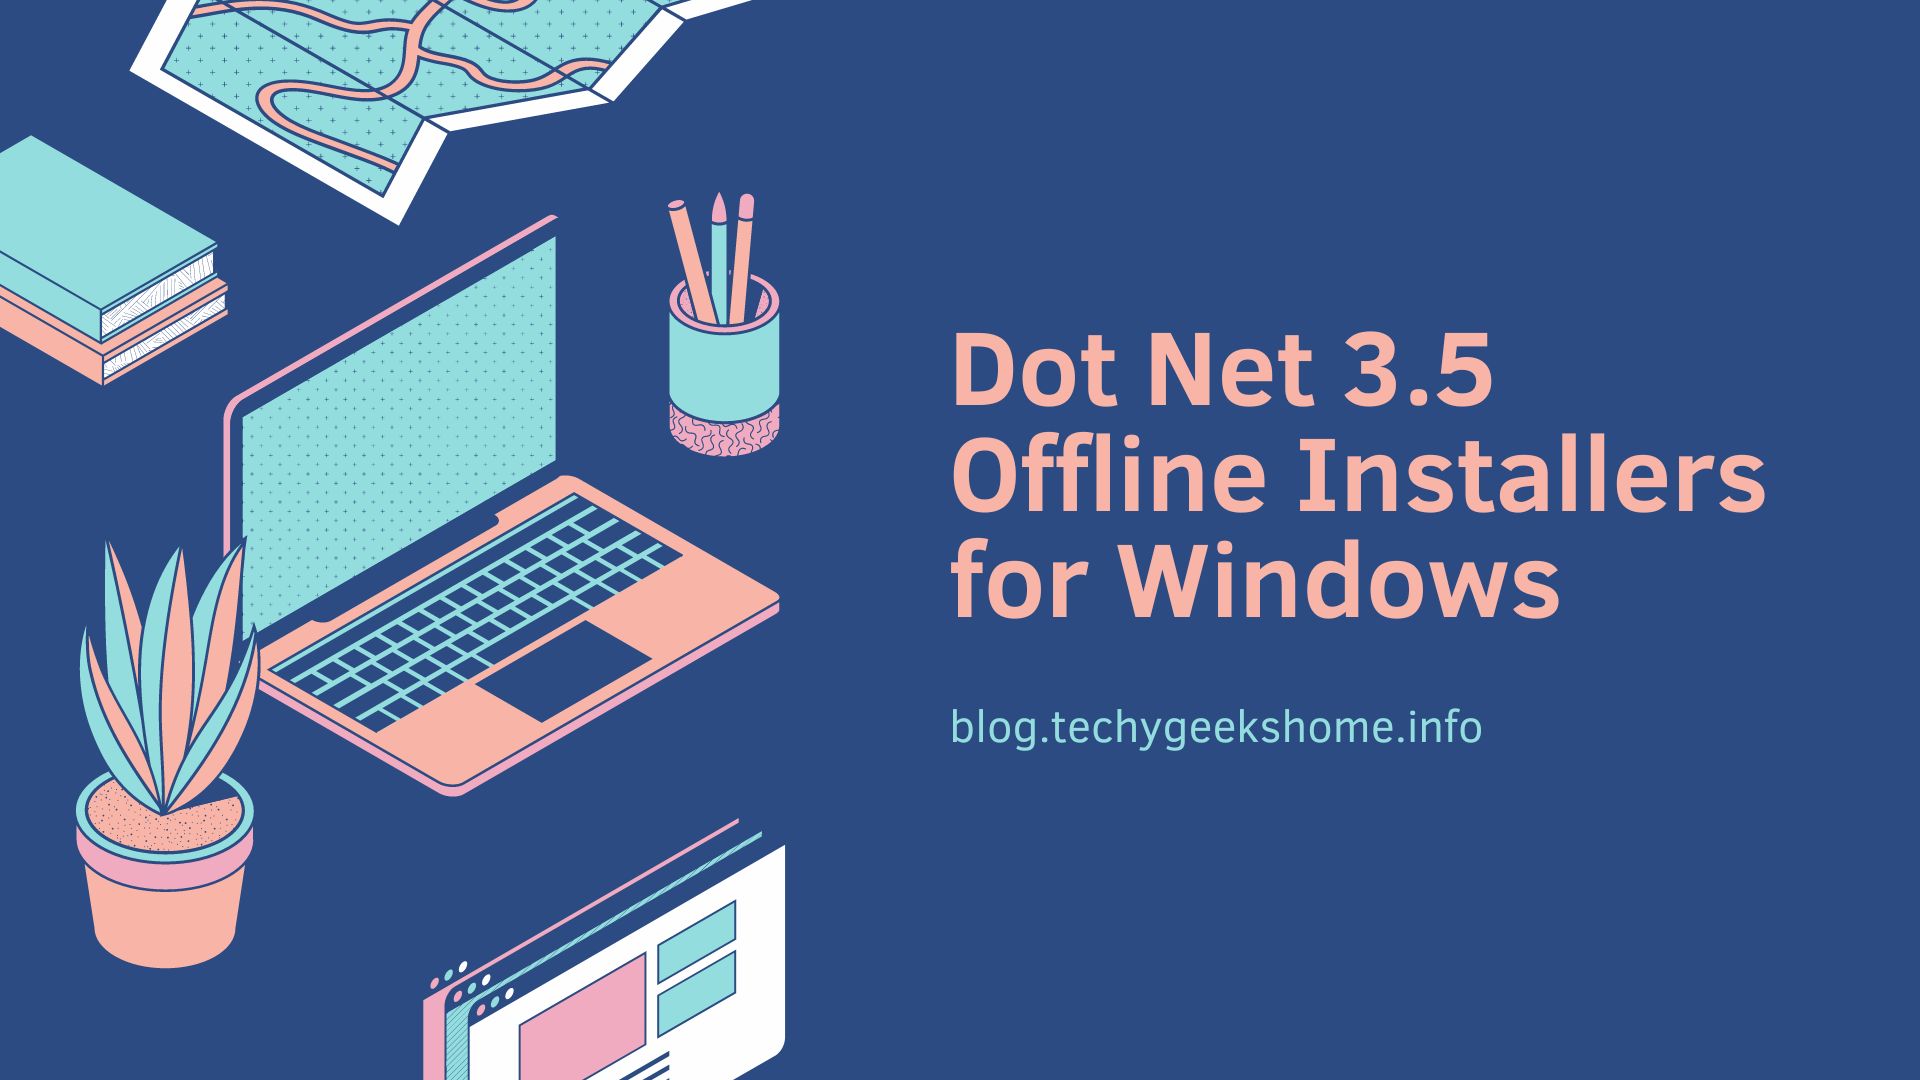 Dot Net 3.5 Offline Installers for Windows